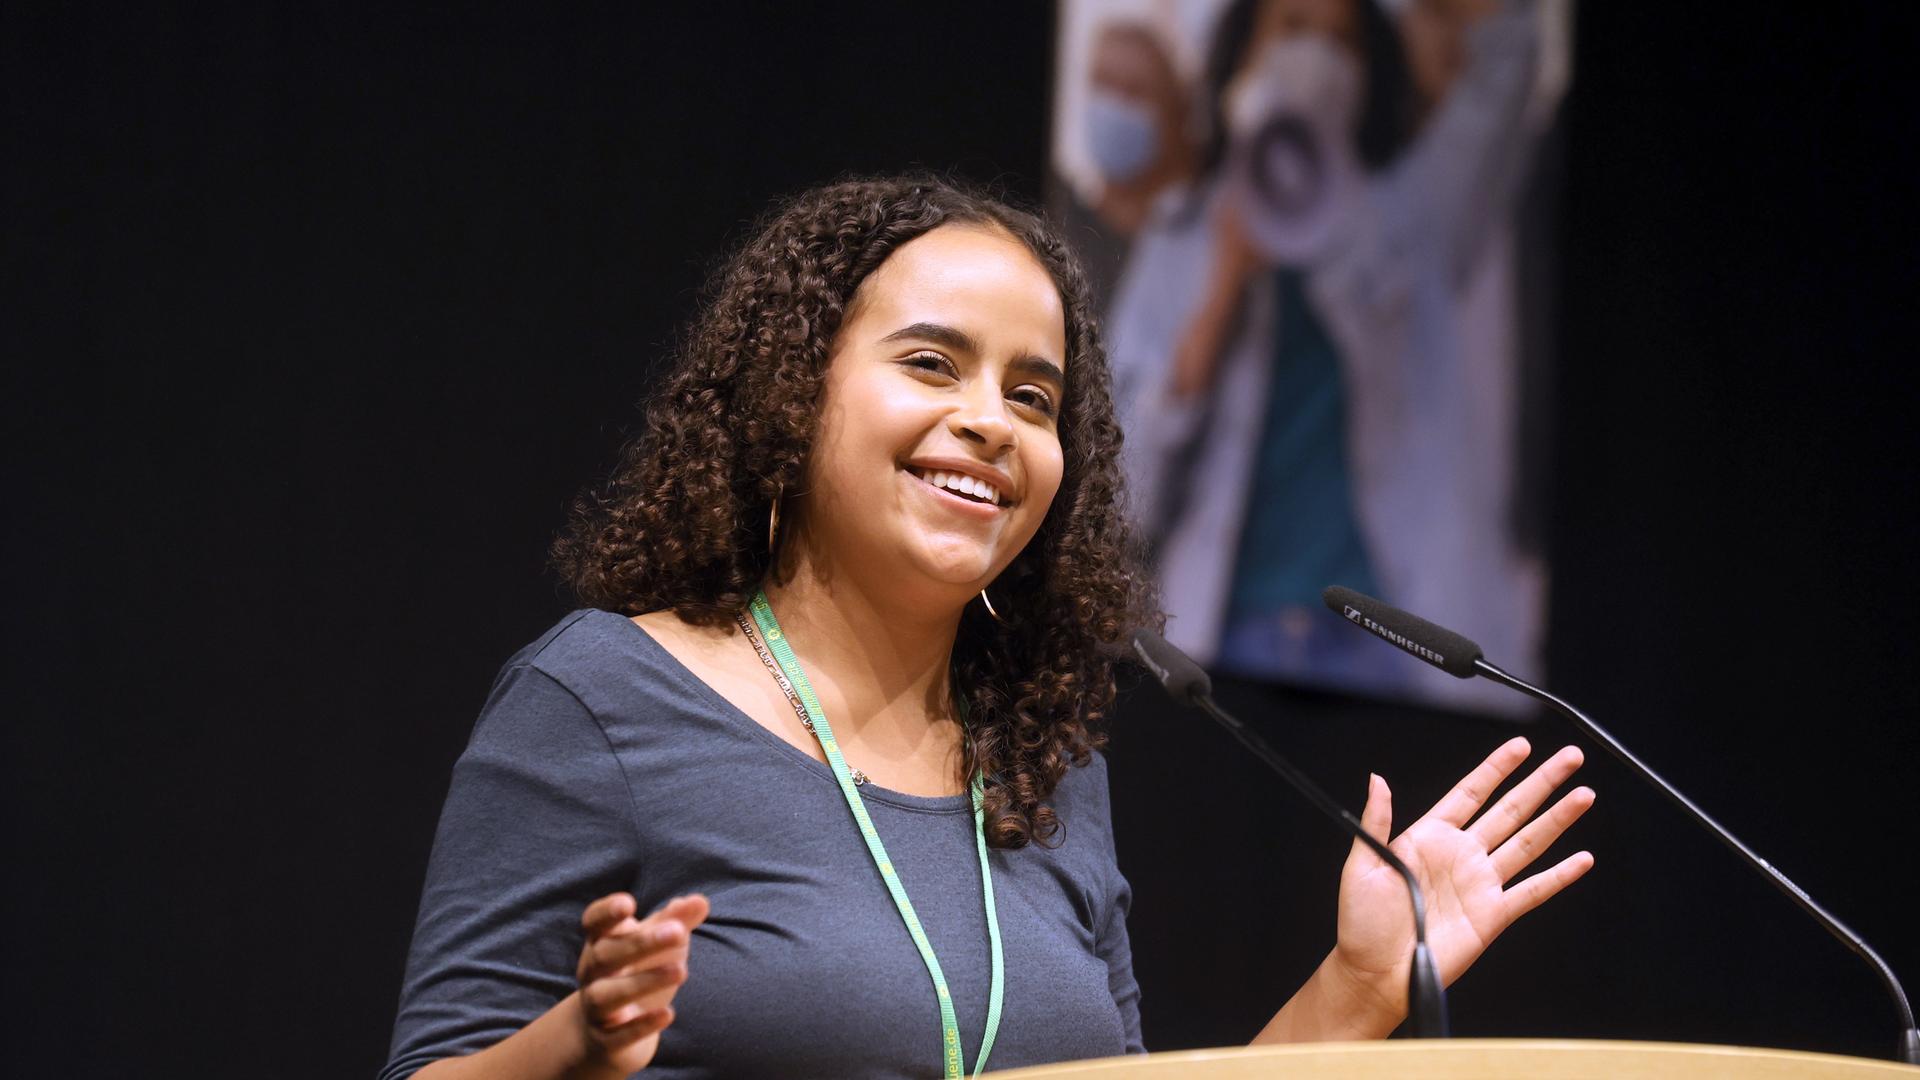 Sarah-Lee Heinrich, die Co-Bundessprecherin der Grünen Jugend, spricht beim 55. Bundeskongress der Parteijugend. Sie steht an einem Pult und blickt lächelnd ins Pubikum.